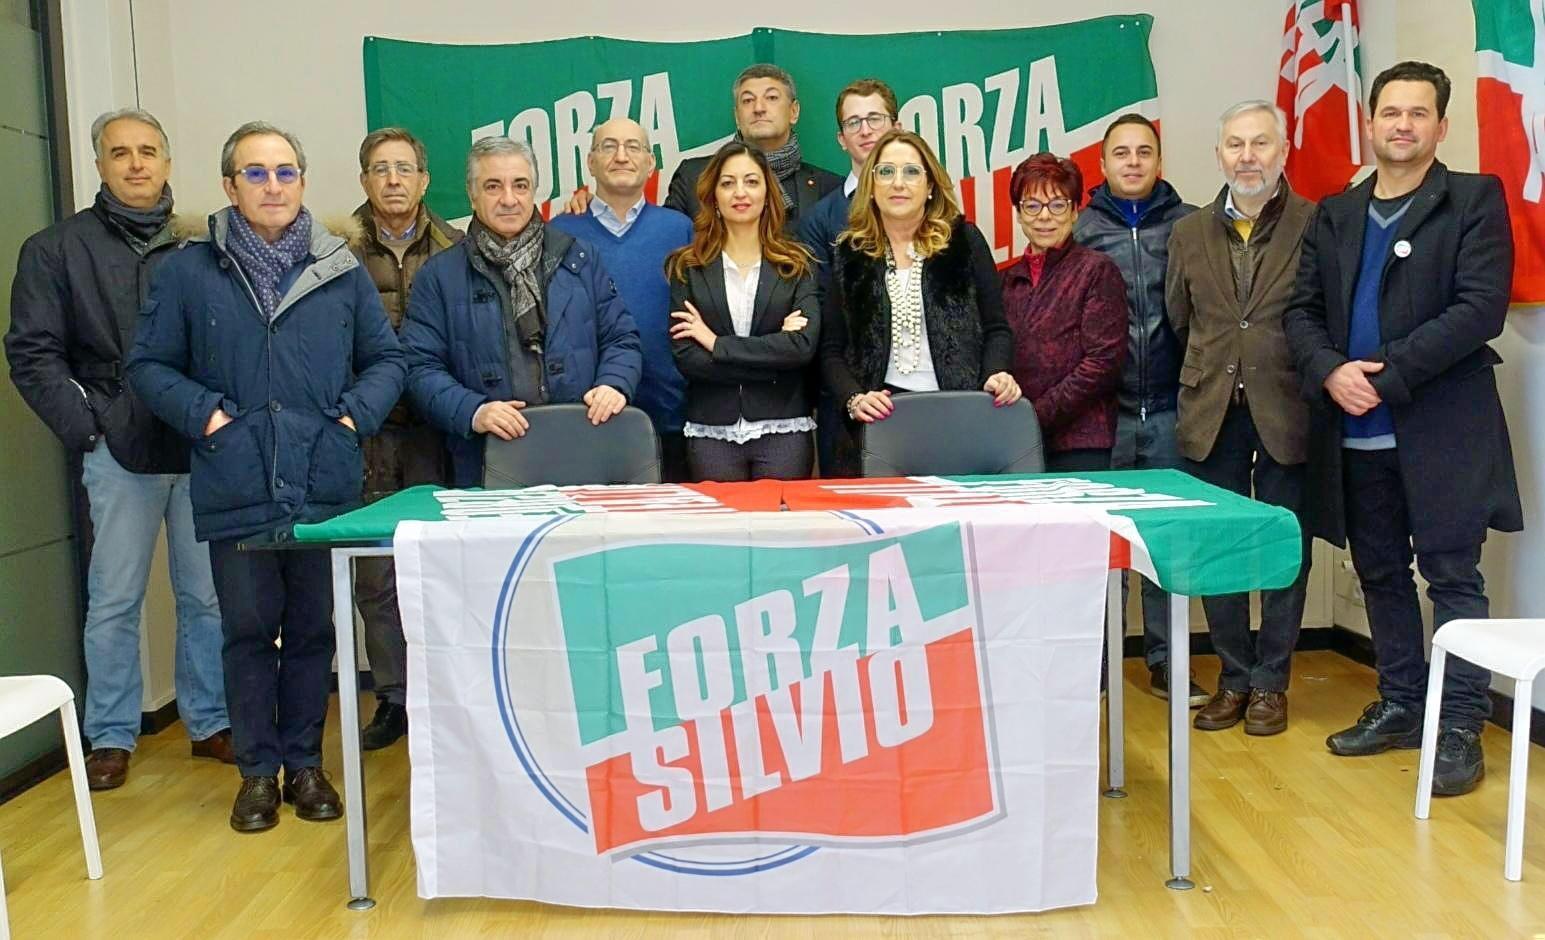 Elezioni ’20: annullata “a sorpresa” la presentazione di Forza Italia